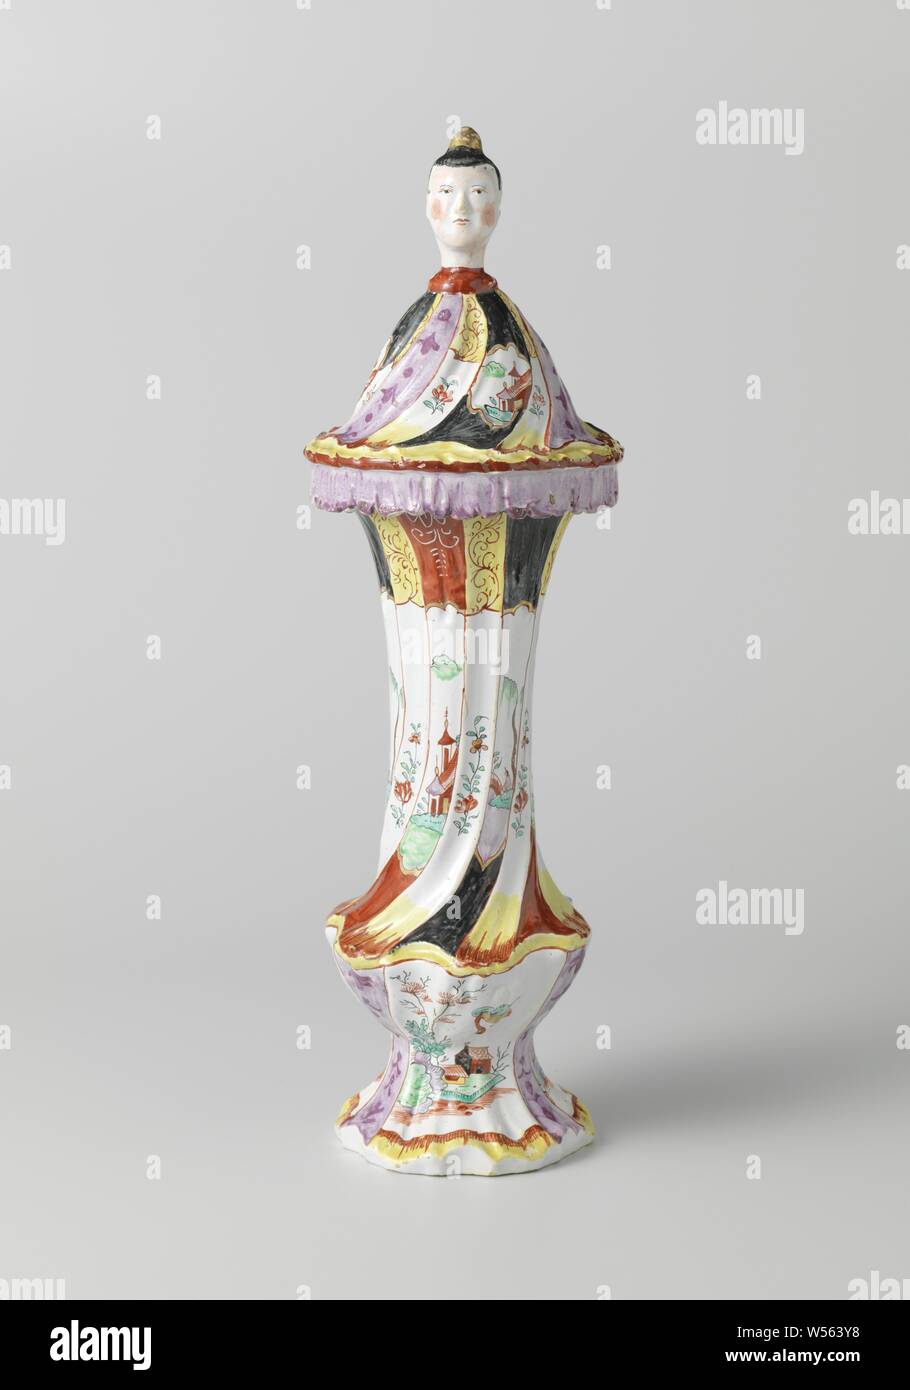 Trois vases, partie d'un vase couvert 151064, peint avec des pagodes, des paysages chinois et bouquets, vase couvert, multicolore avec pagodes, paysages chinois et bouquets à la chinoise. La base et le haut et le bas du vase sont entièrement faits de rocailles. Le couvercle ressemble à un raccourci qui se plie robe chinoise sur le bord du vase. Le bouton du couvercle est formé d'une tête de femme chinoise (chinois, d'autres aspects culturels), De Grieksche A, Delft, c. 1765, H 43 cm × d 13 cm, bien que la figure soit doux visage est stylisée, il y a un degré de réalisme dans l'attitude du corps avec certains Banque D'Images